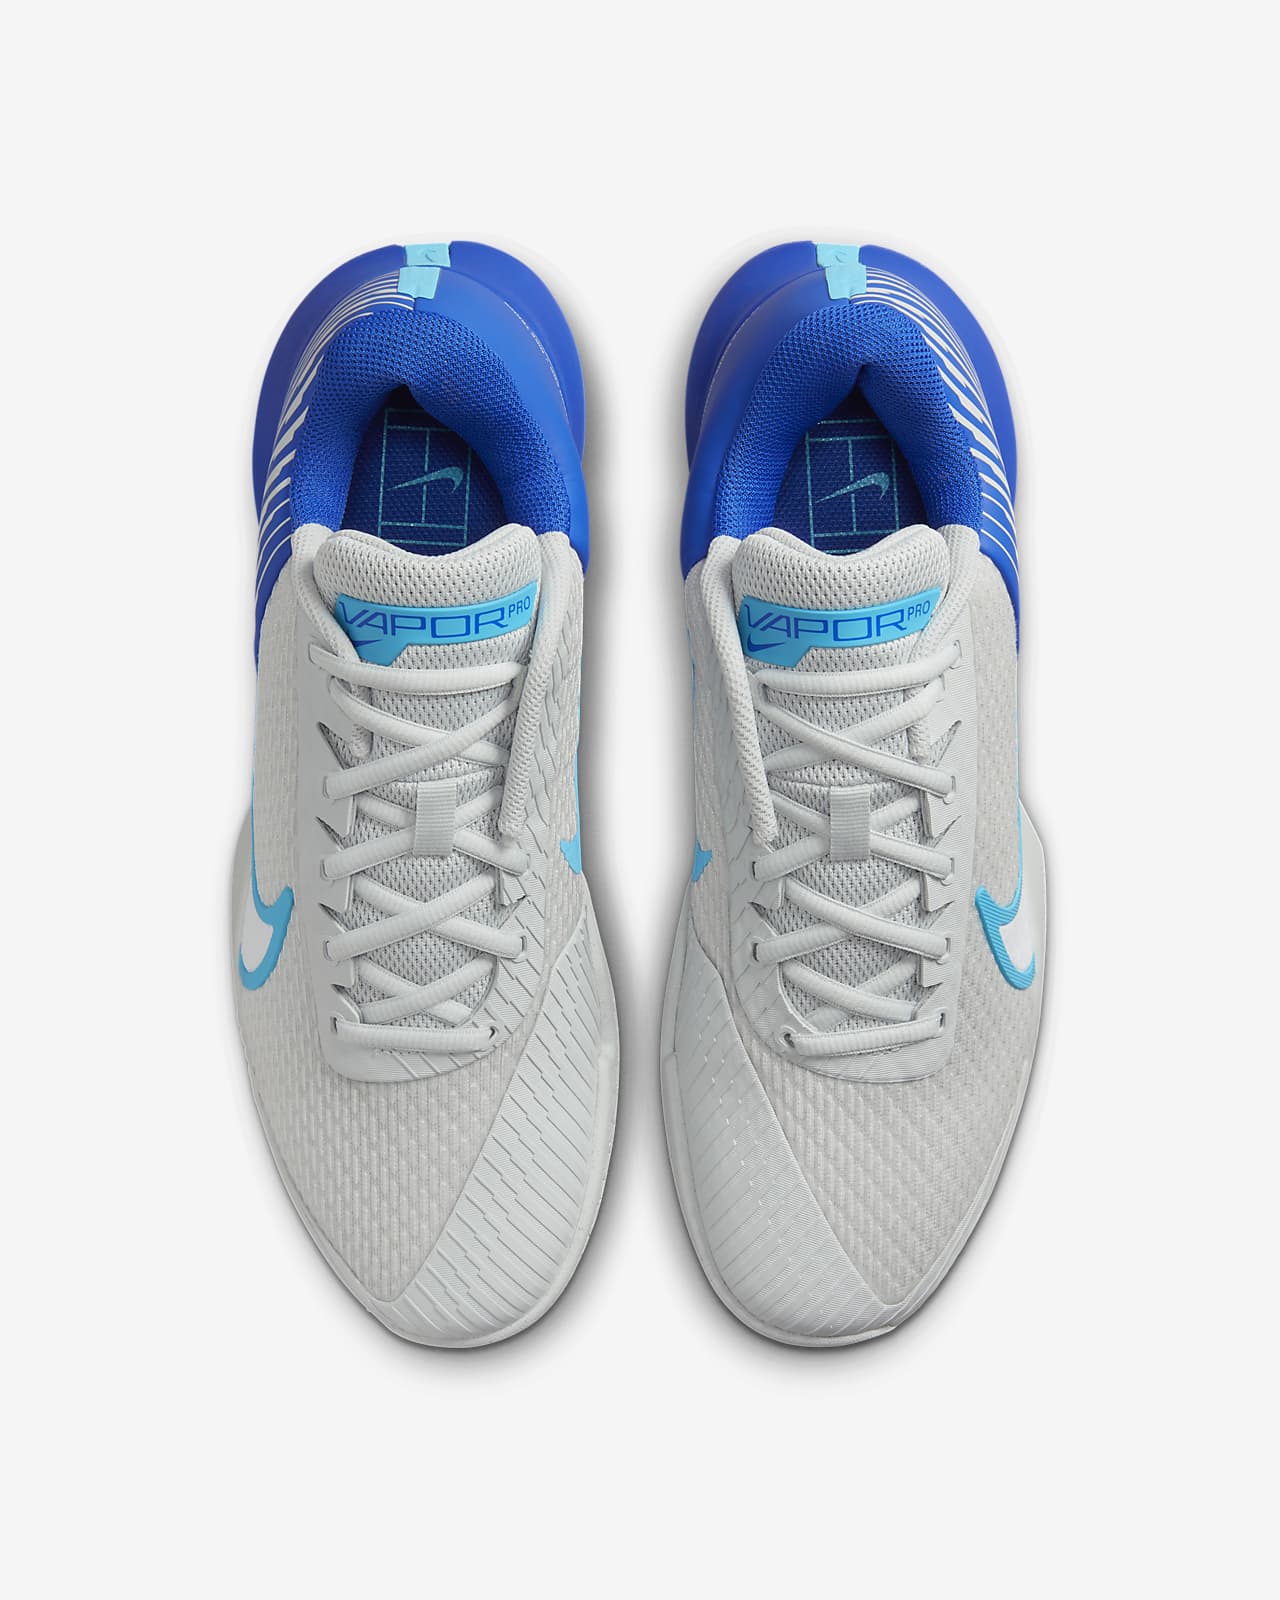 NikeCourt Air Zoom Vapor Pro 2 Men's Hard Court Tennis Shoes